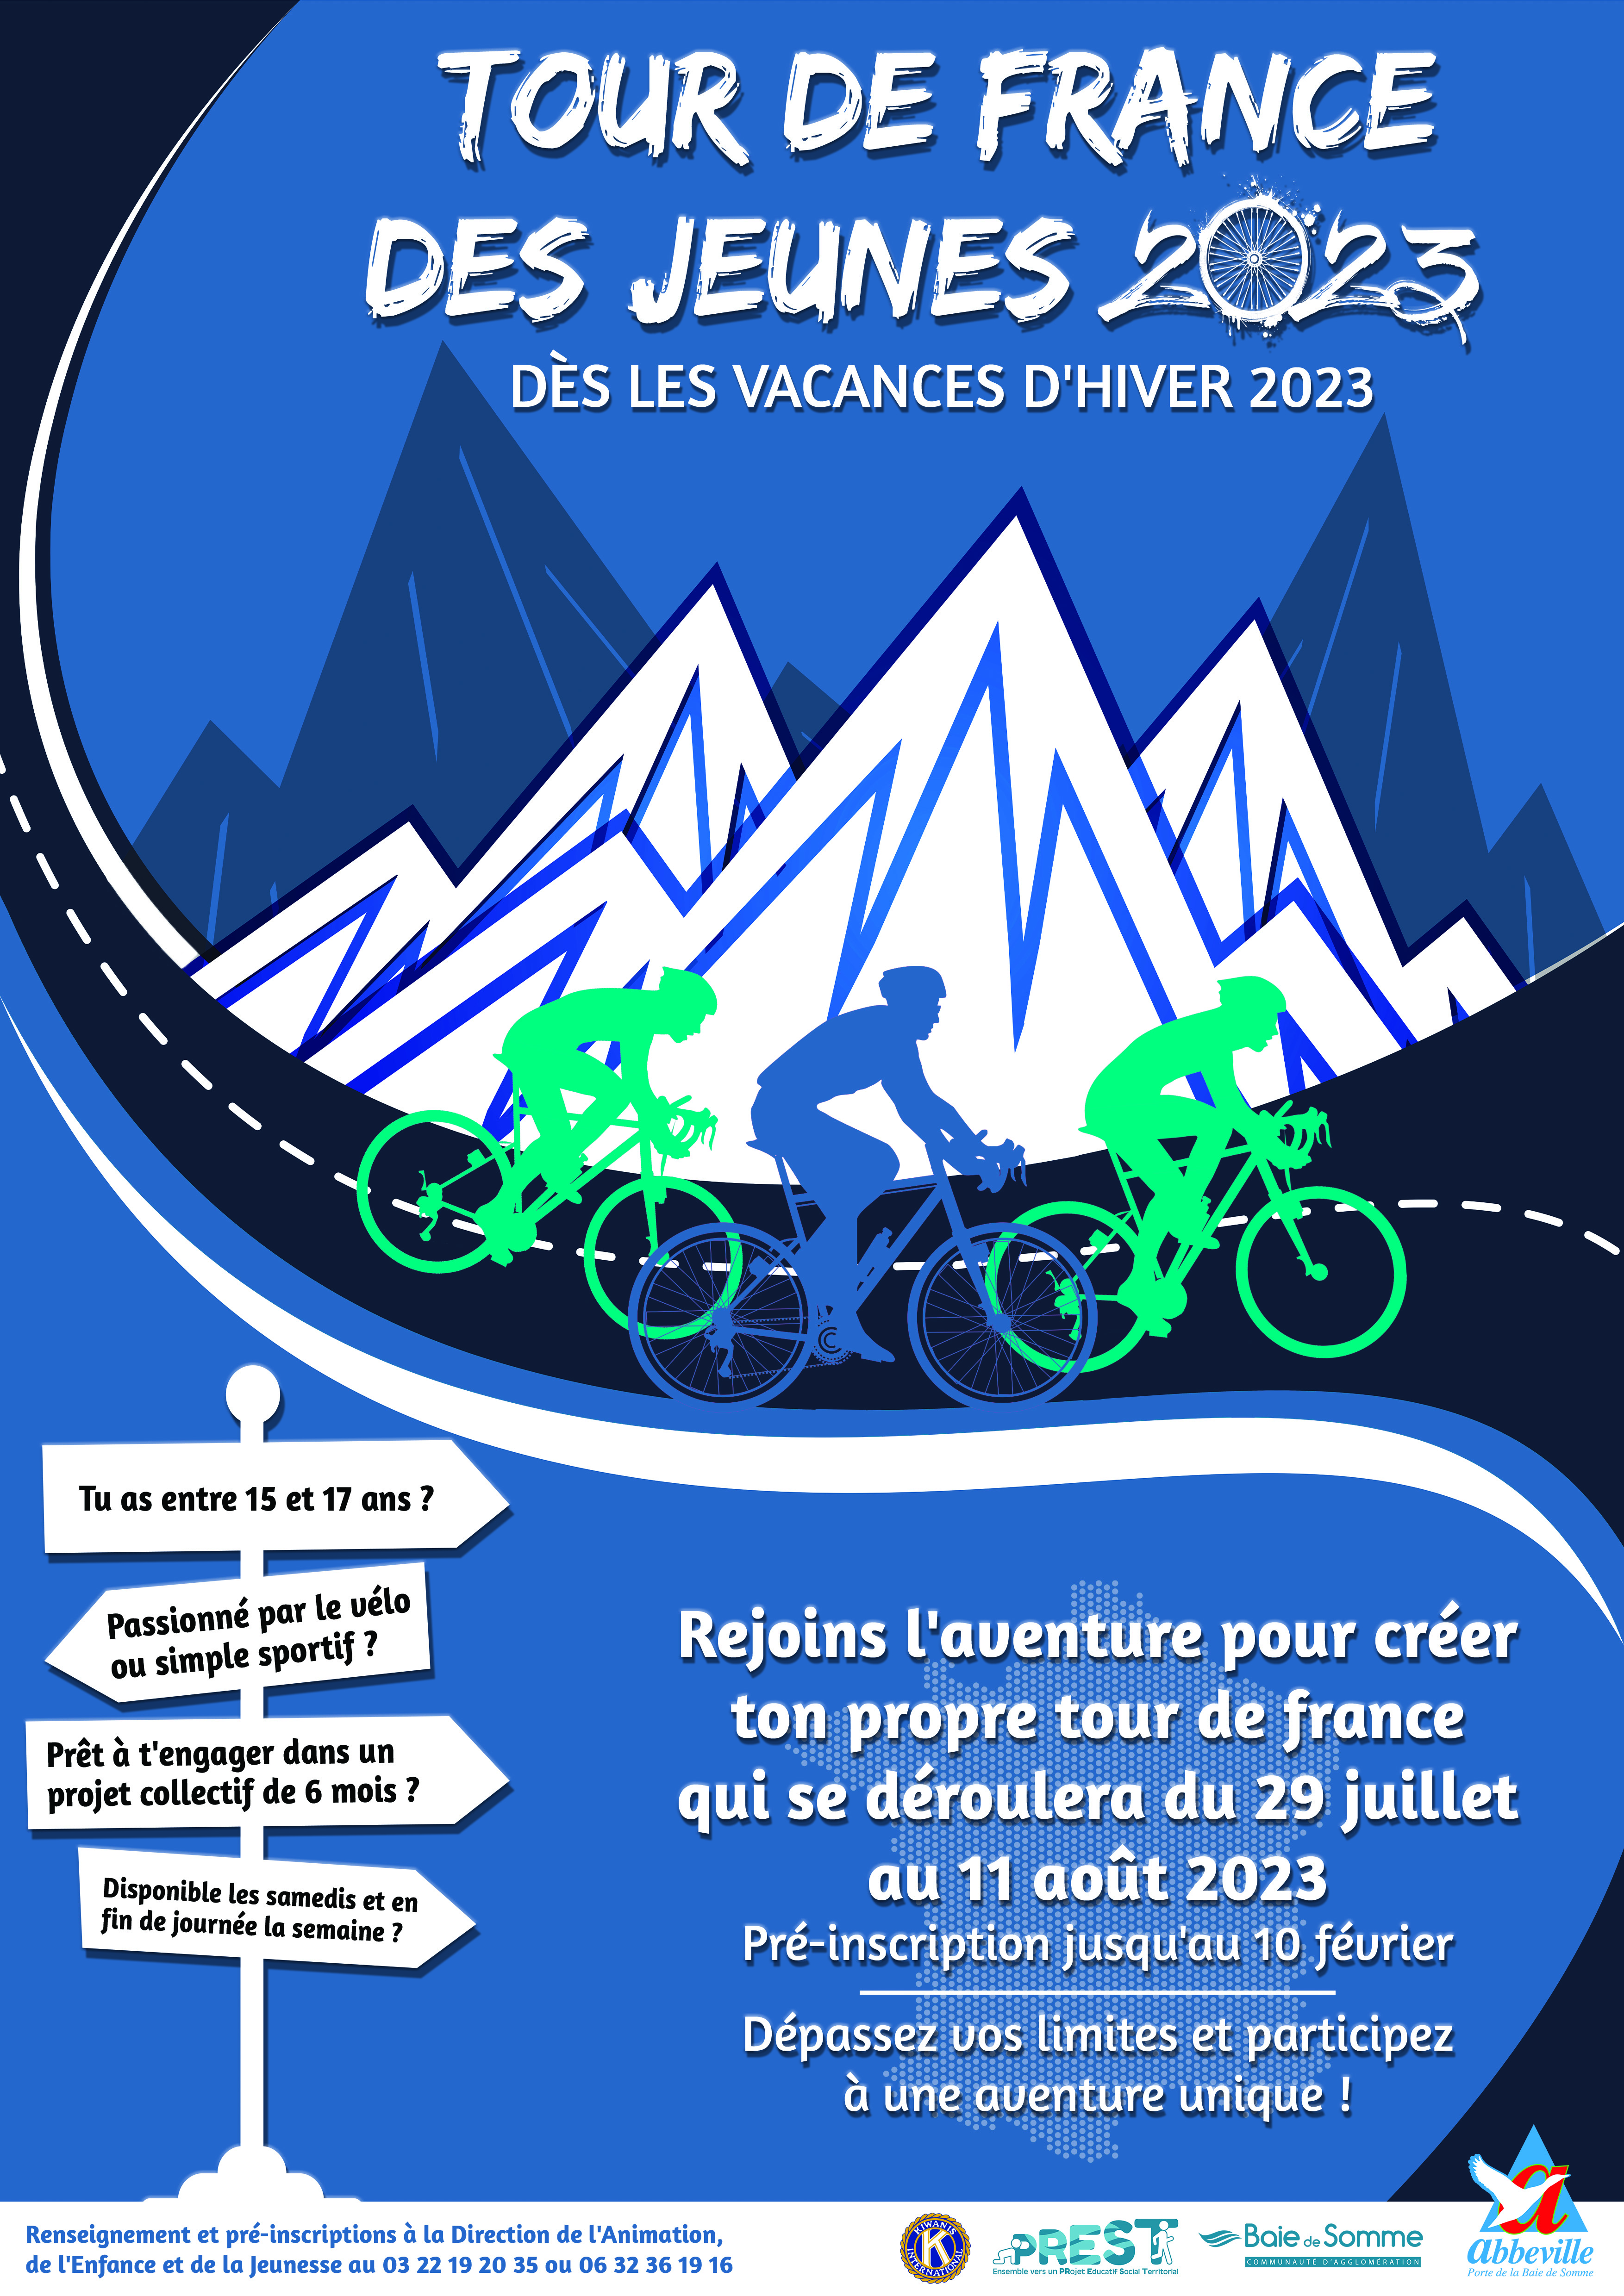 You are currently viewing Tour de France des jeunes à vélo 2023